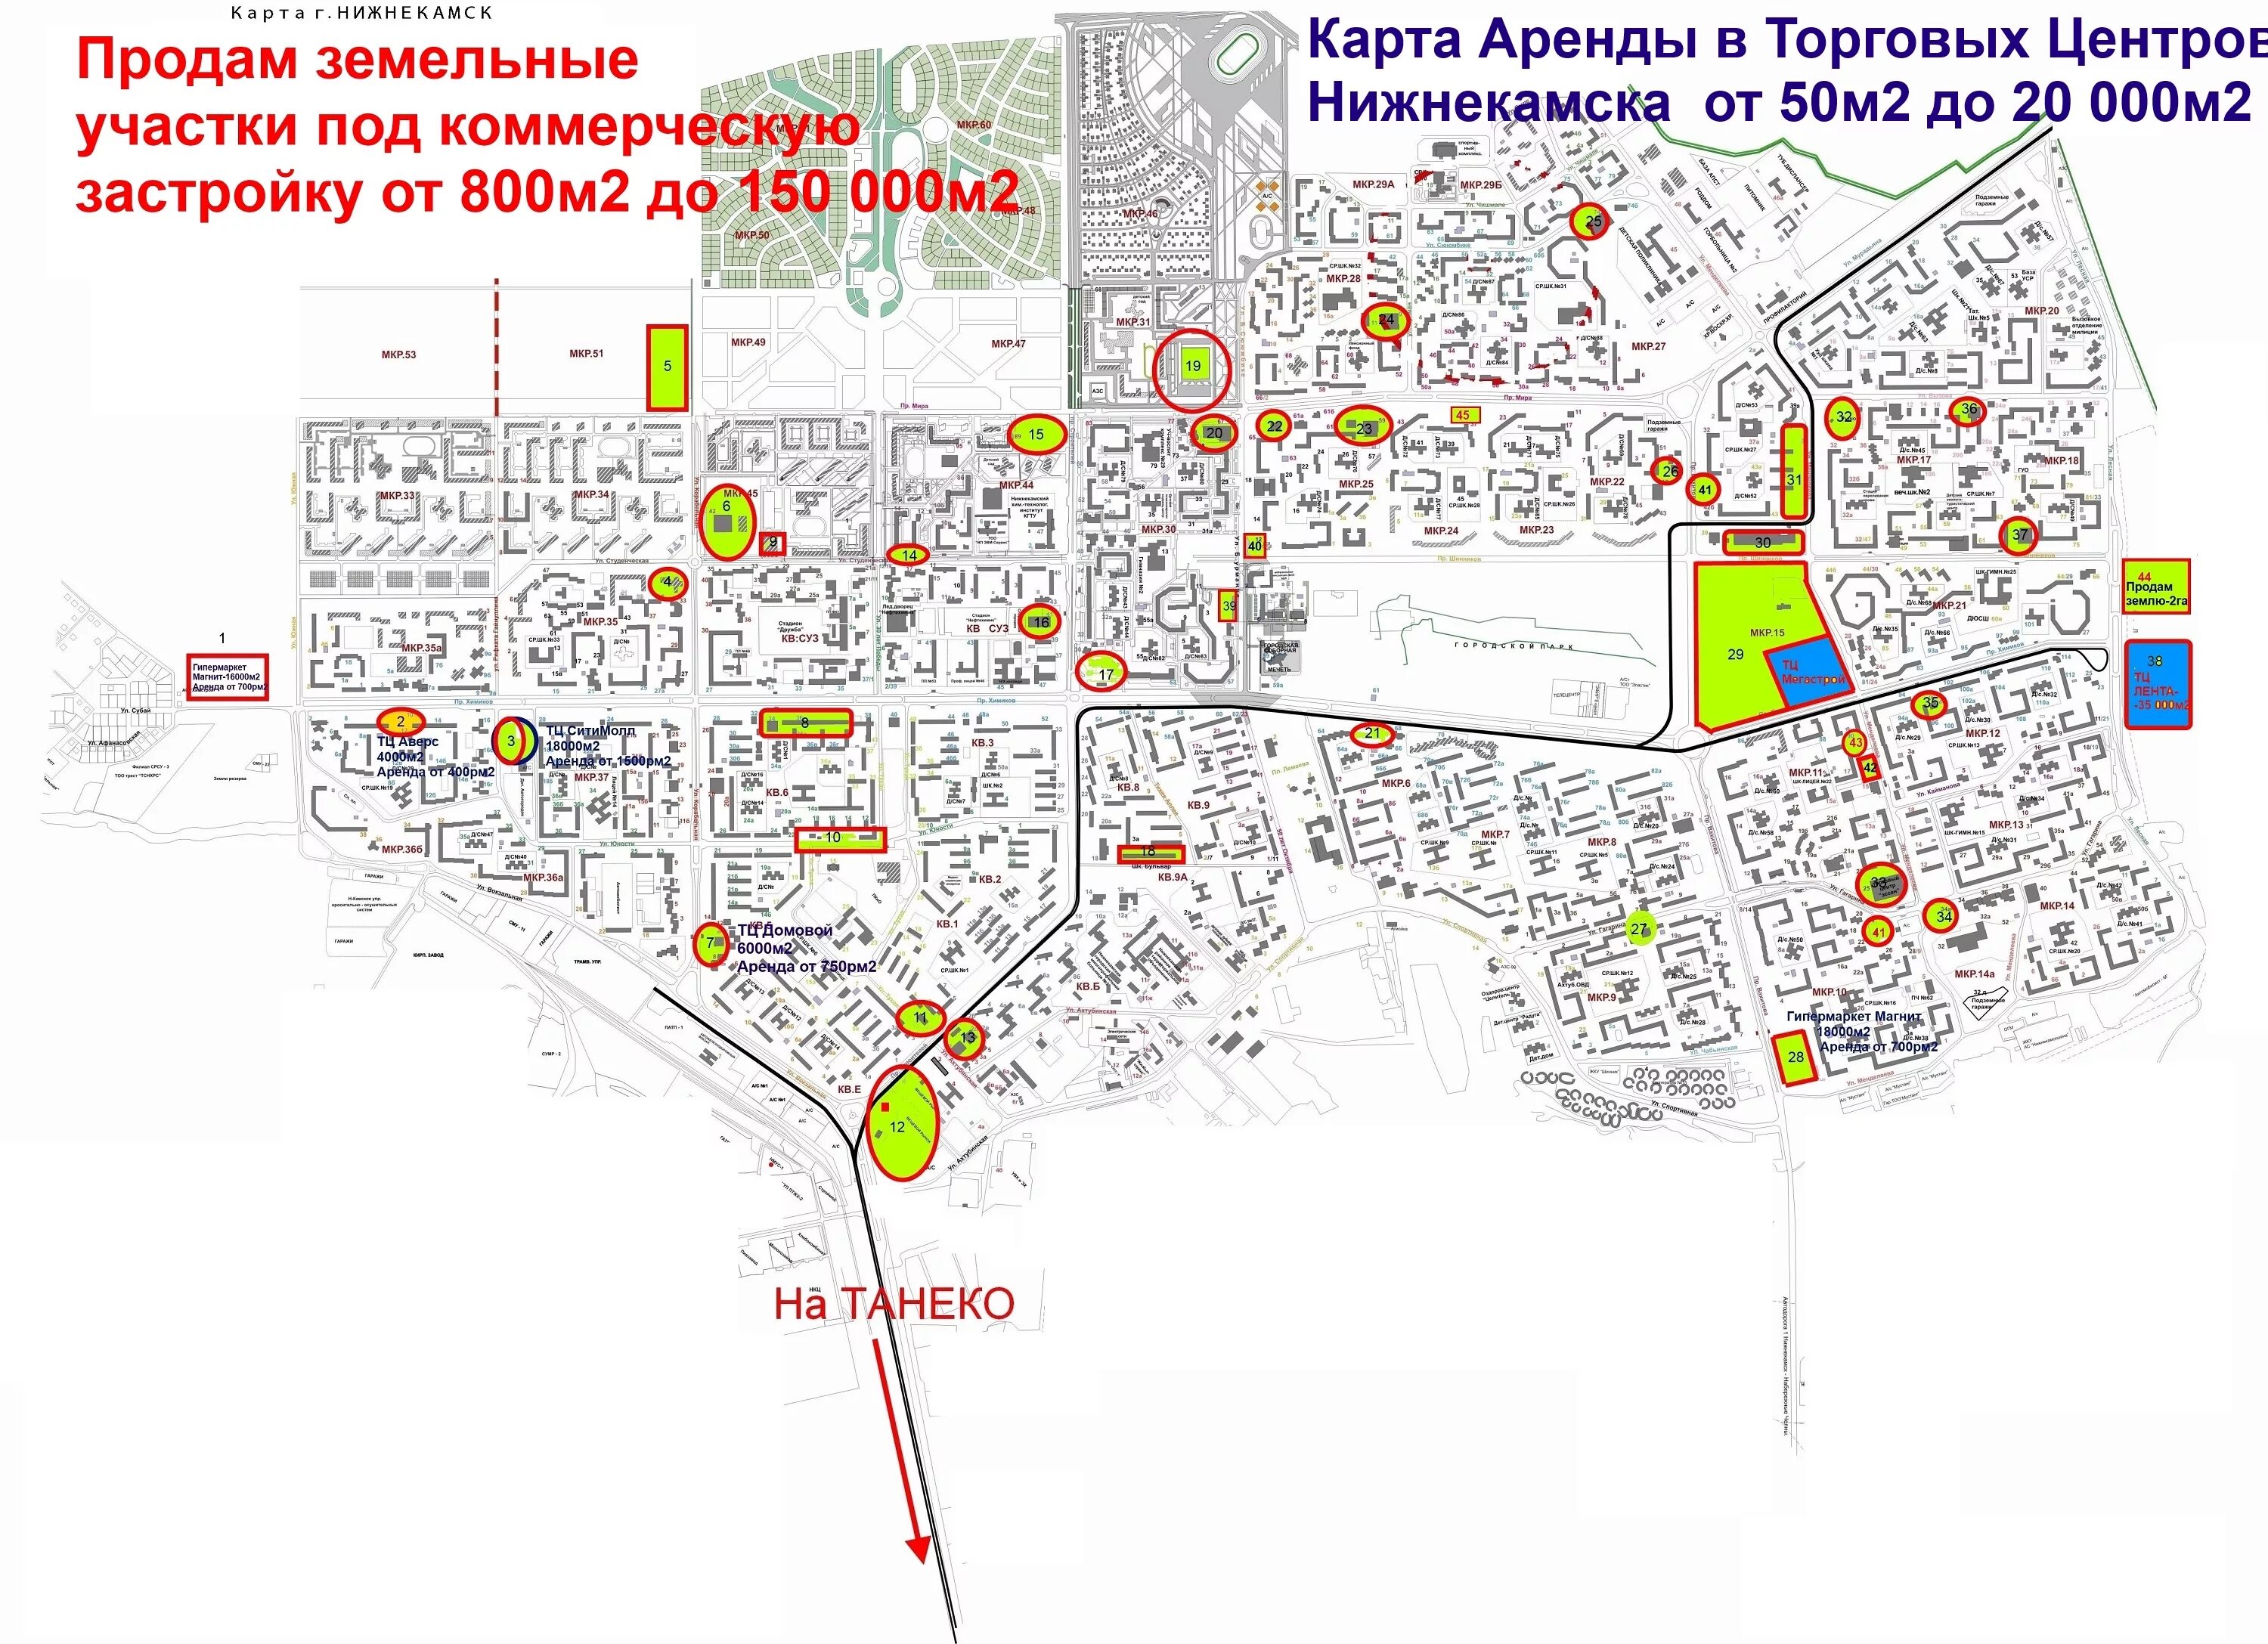 Где находится нижнекамск какая область на карте. Схема города Нижнекамск. Карта города Нижнекамск. Карта Нижнекамска с улицами. Карта города Нижнекамск с микрорайонами.